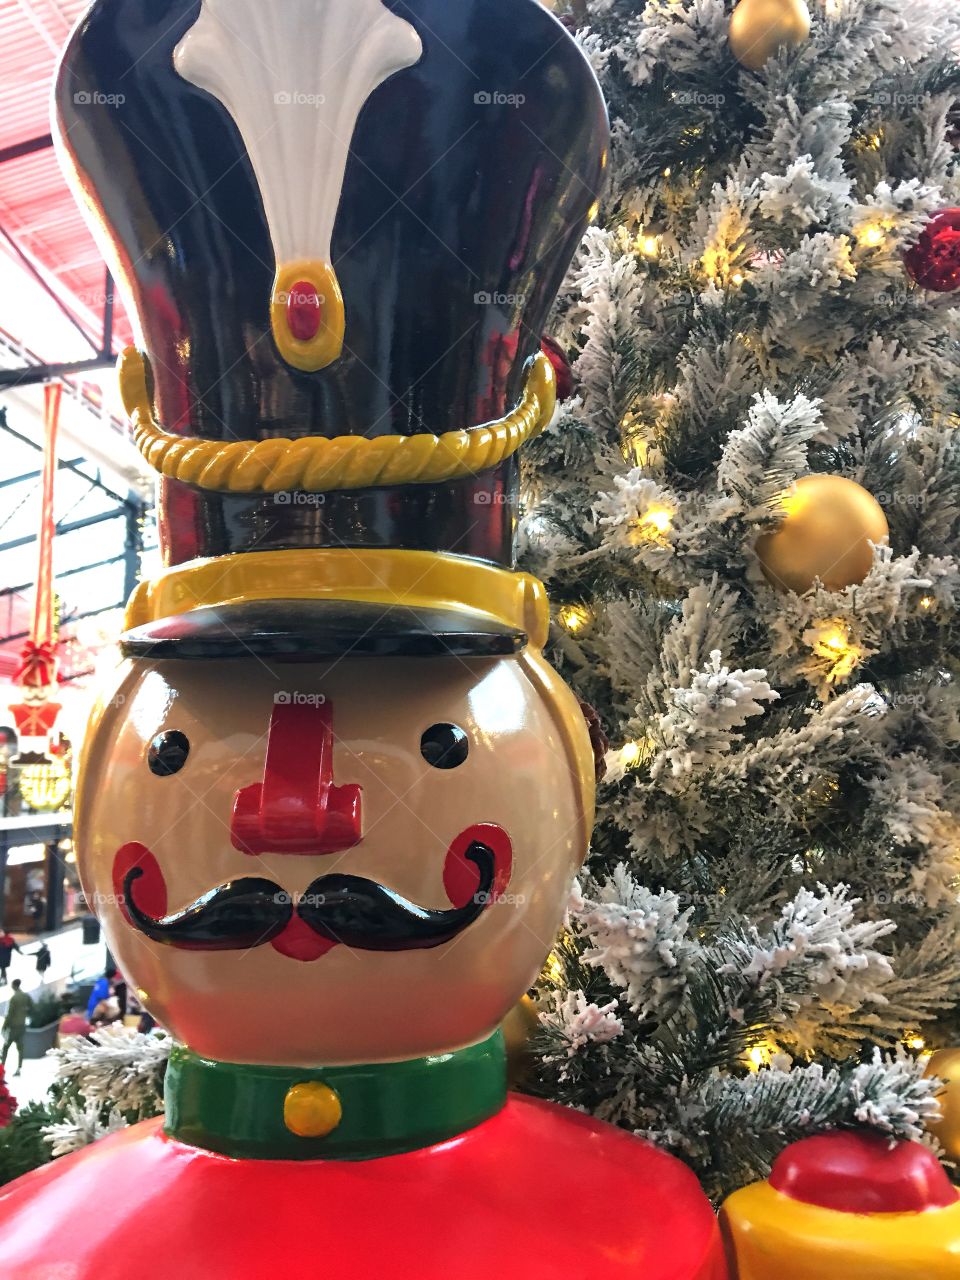 Mall Christmas decor 